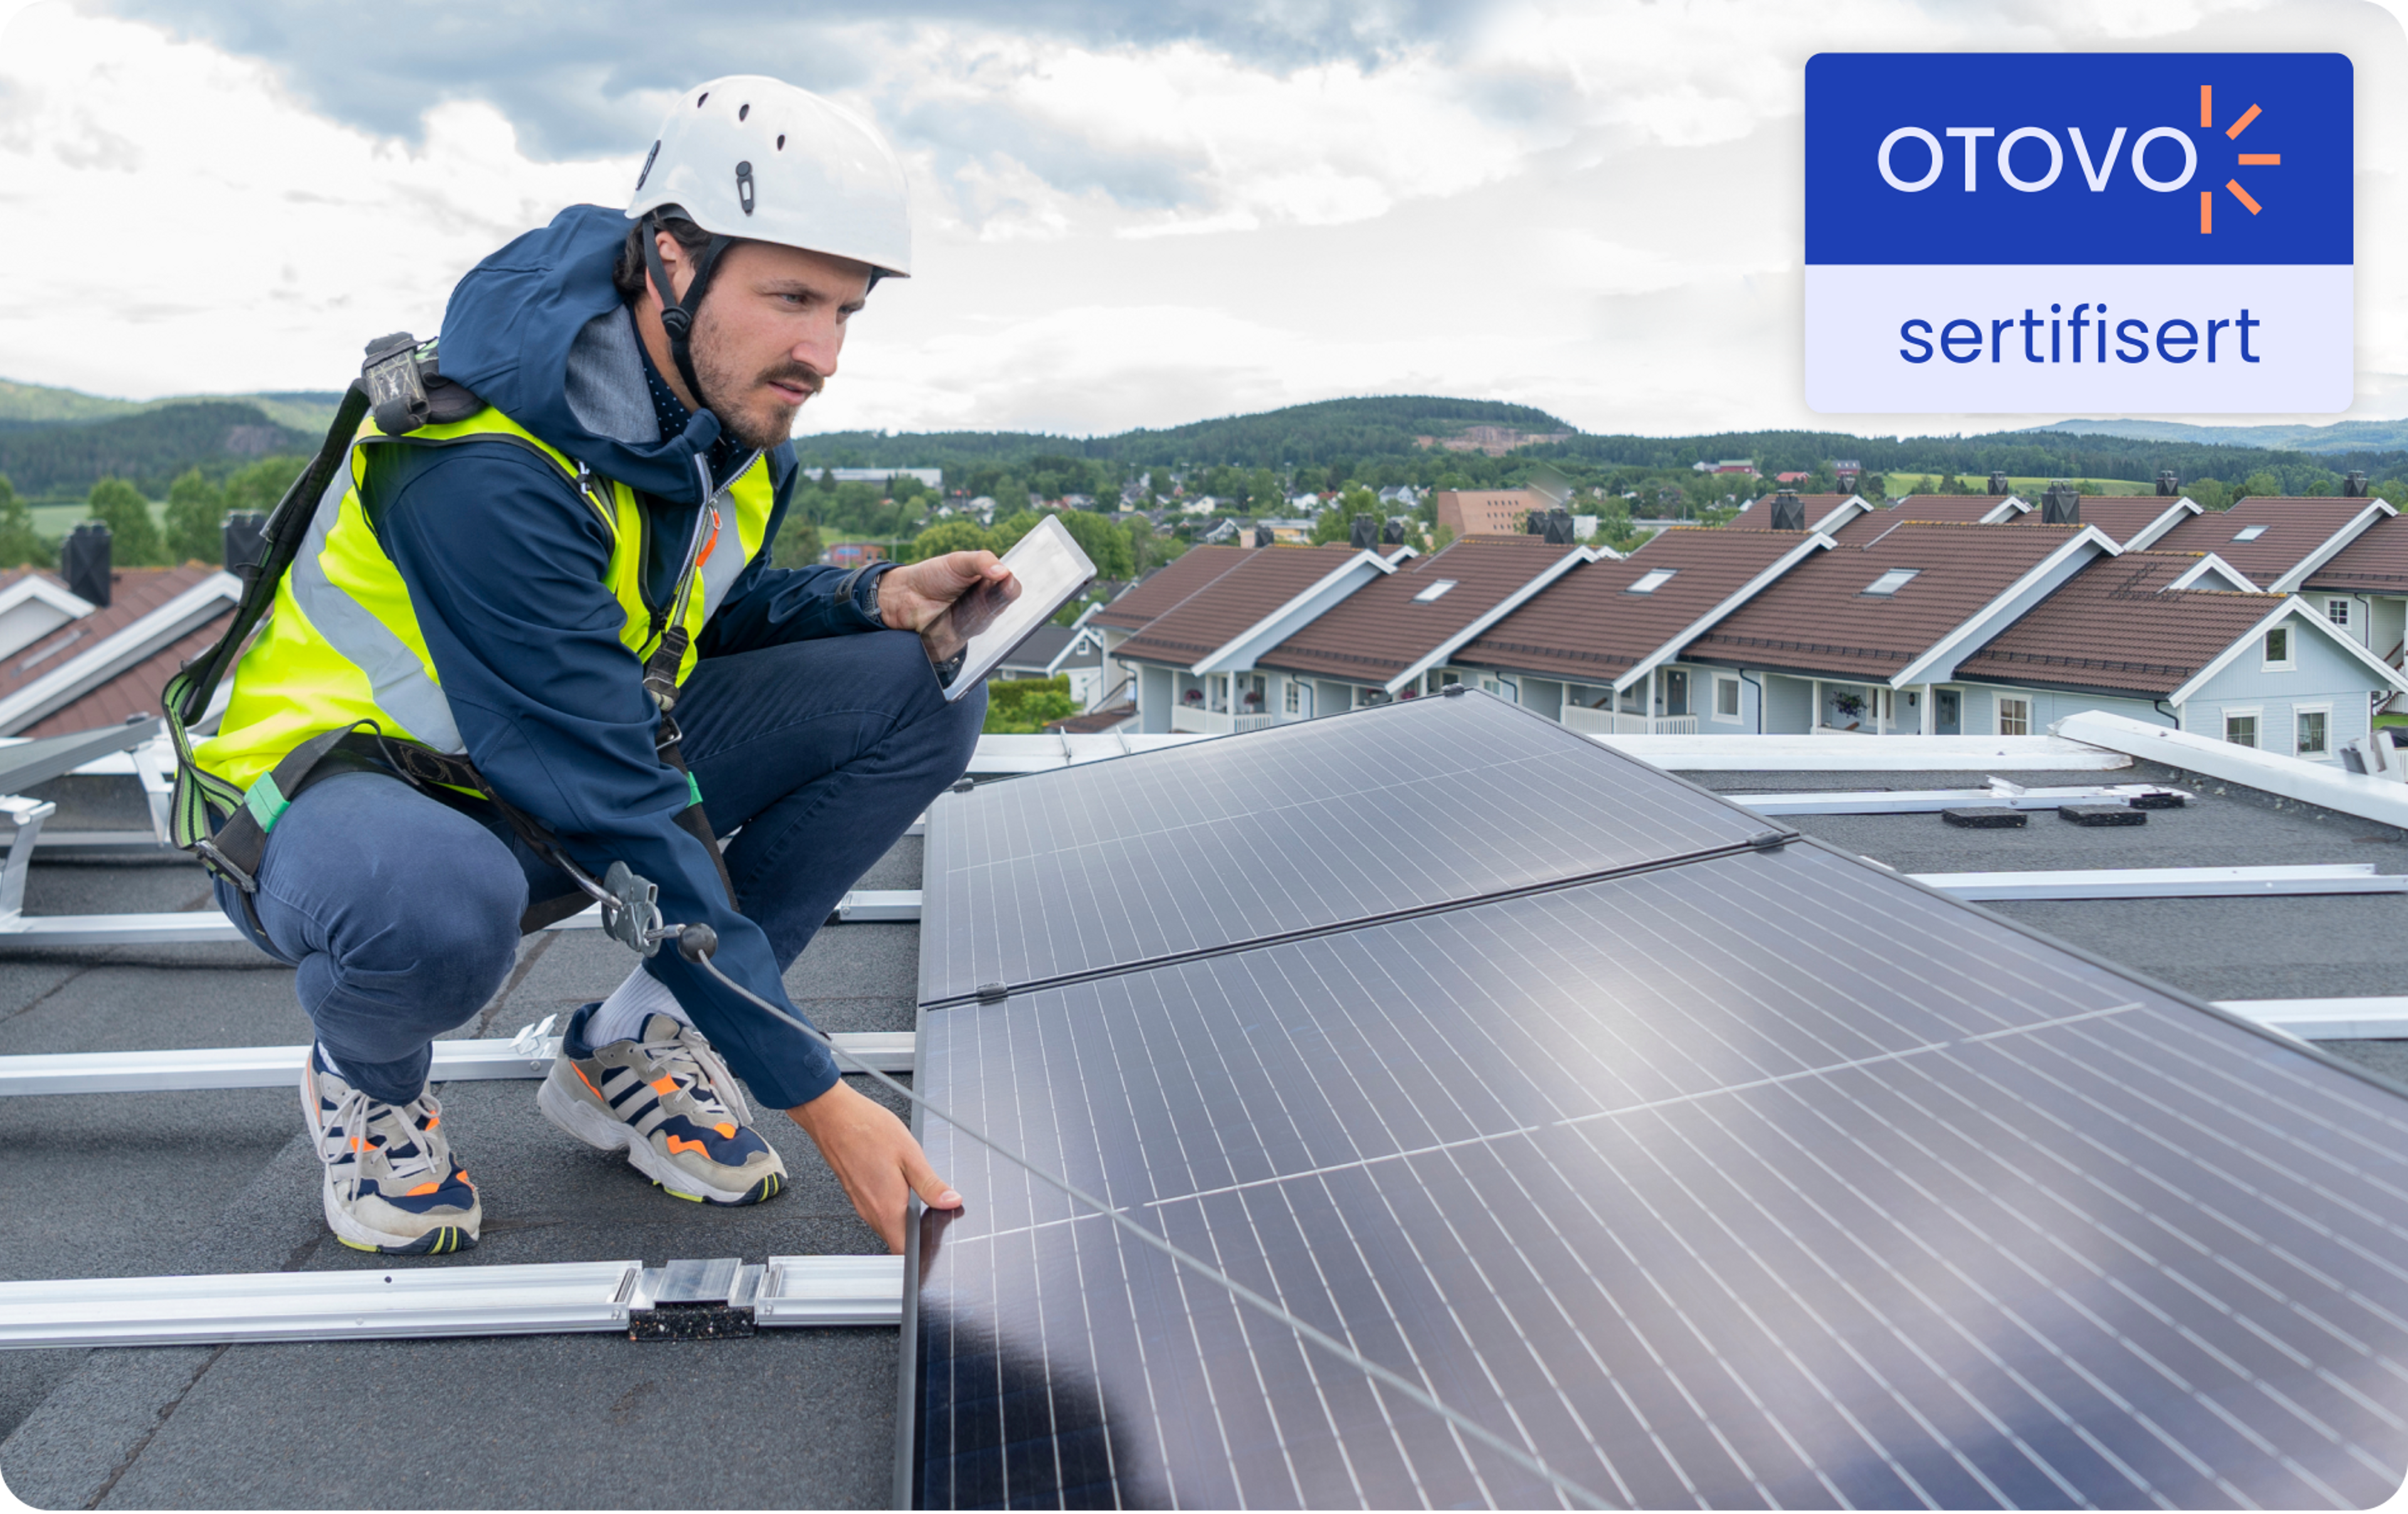 en otovo-sertifisert installatør undersøker solcellepanelene på et flatt tak